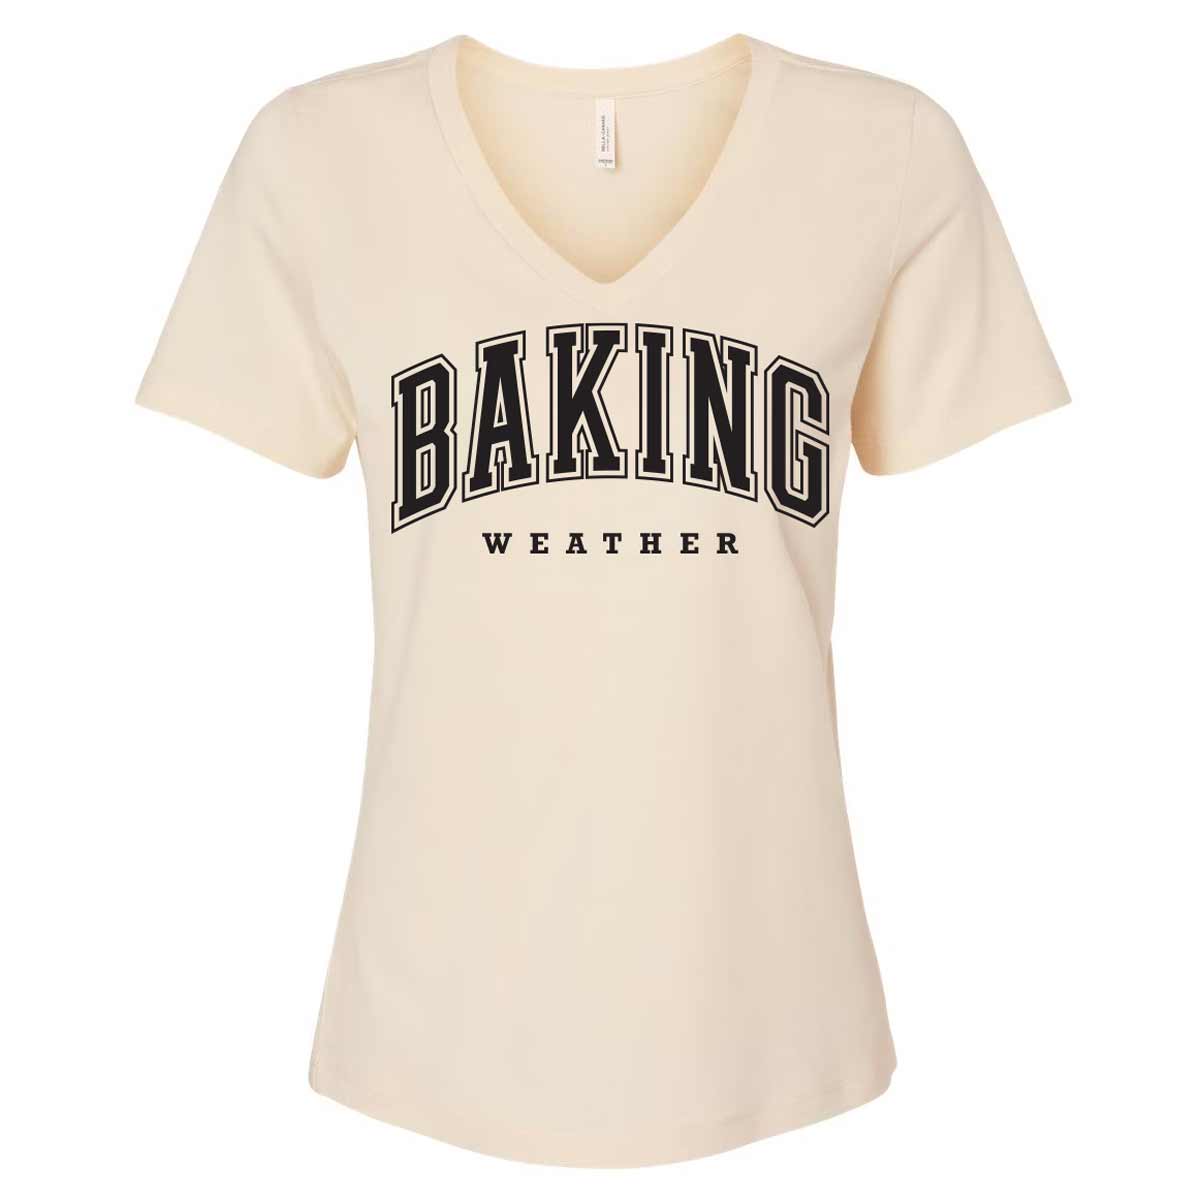 Baking Weather Black Ink Ladies V-Neck T-Shirt